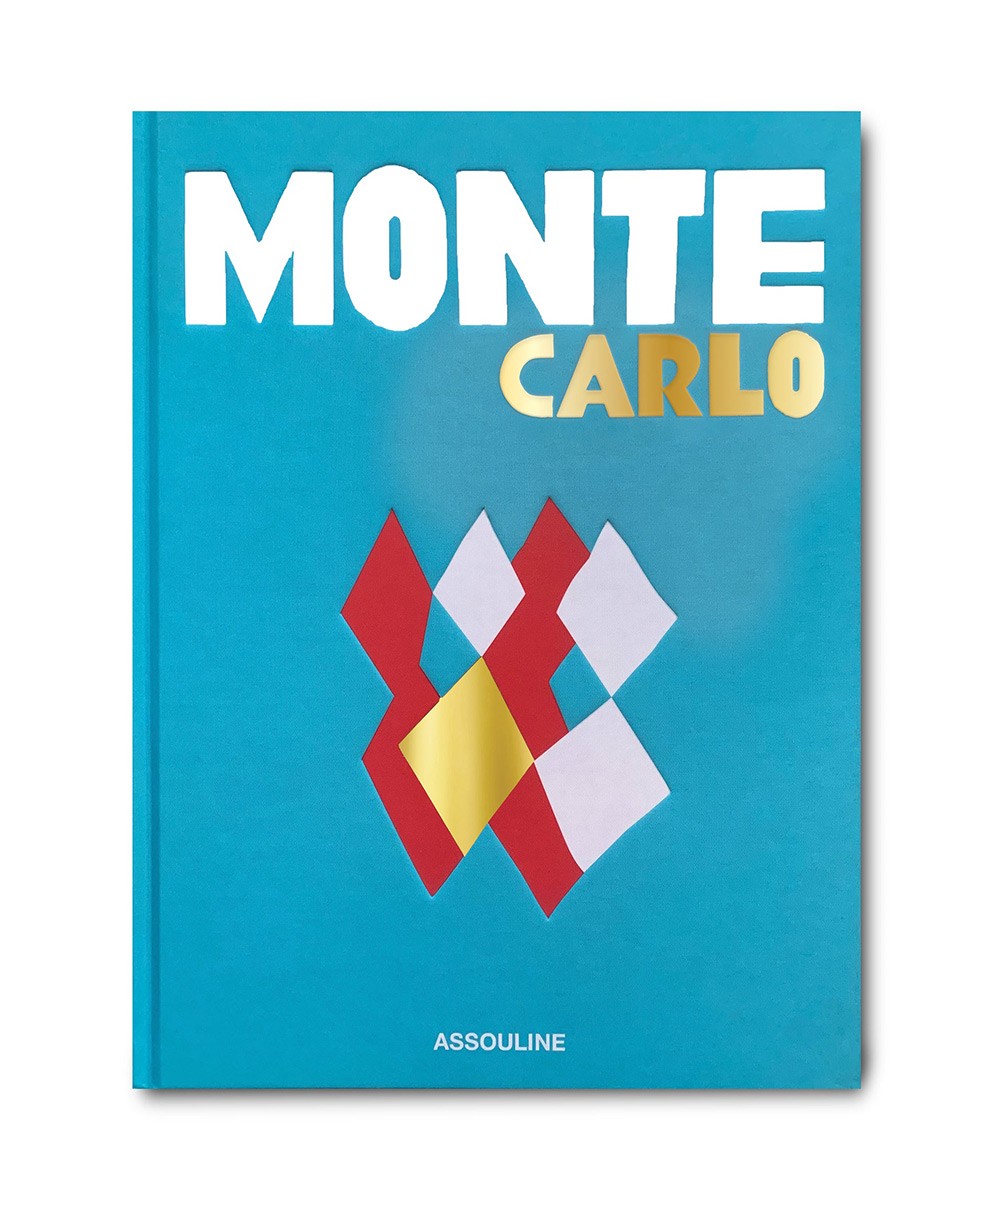 Produktbild des Coffee Table Travel Books „Monte Carlo“ von Assouline im RAUM concept store 